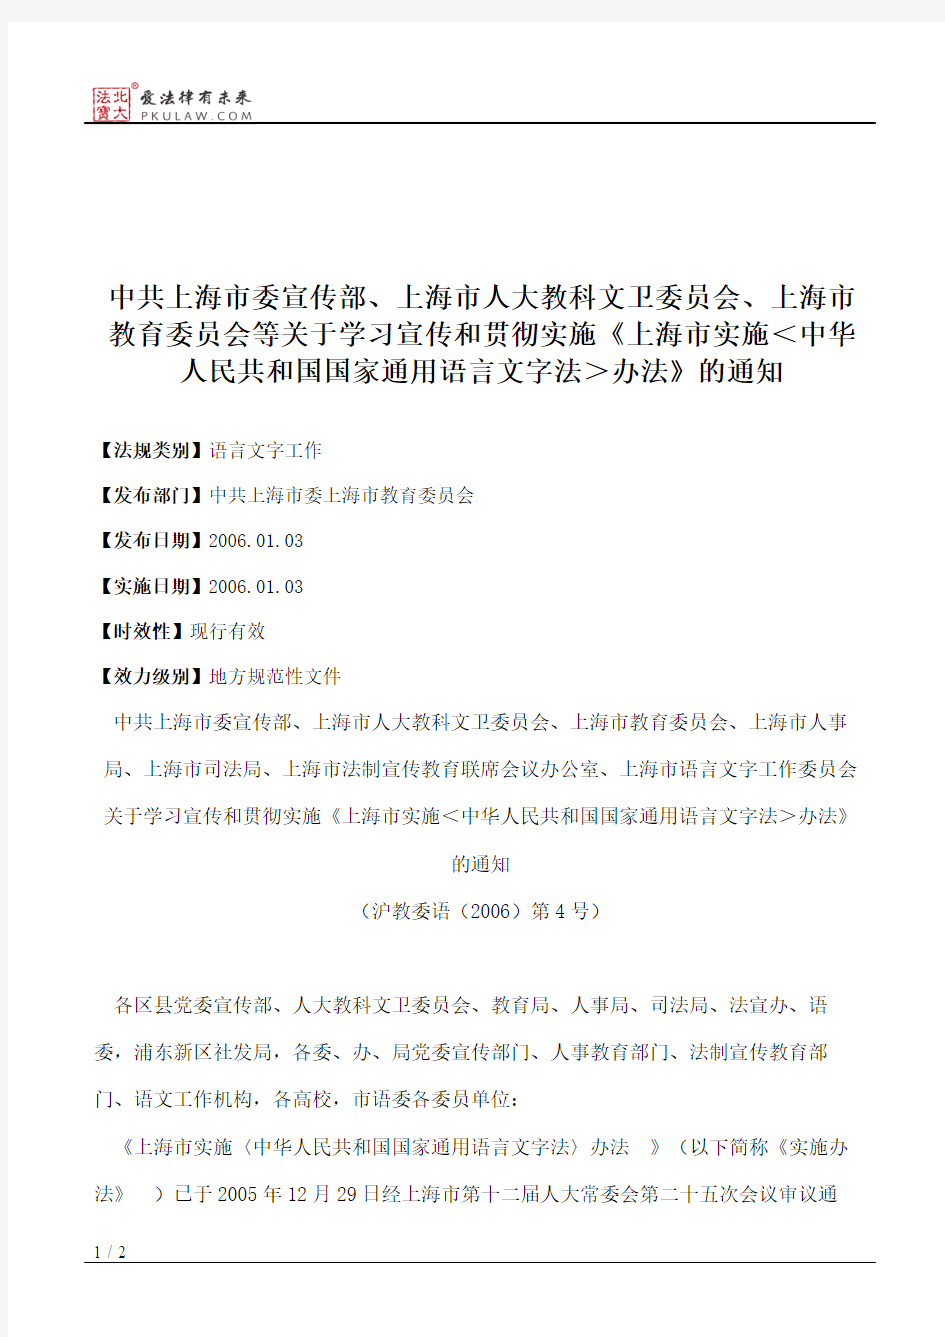 中共上海市委宣传部、上海市人大教科文卫委员会、上海市教育委员